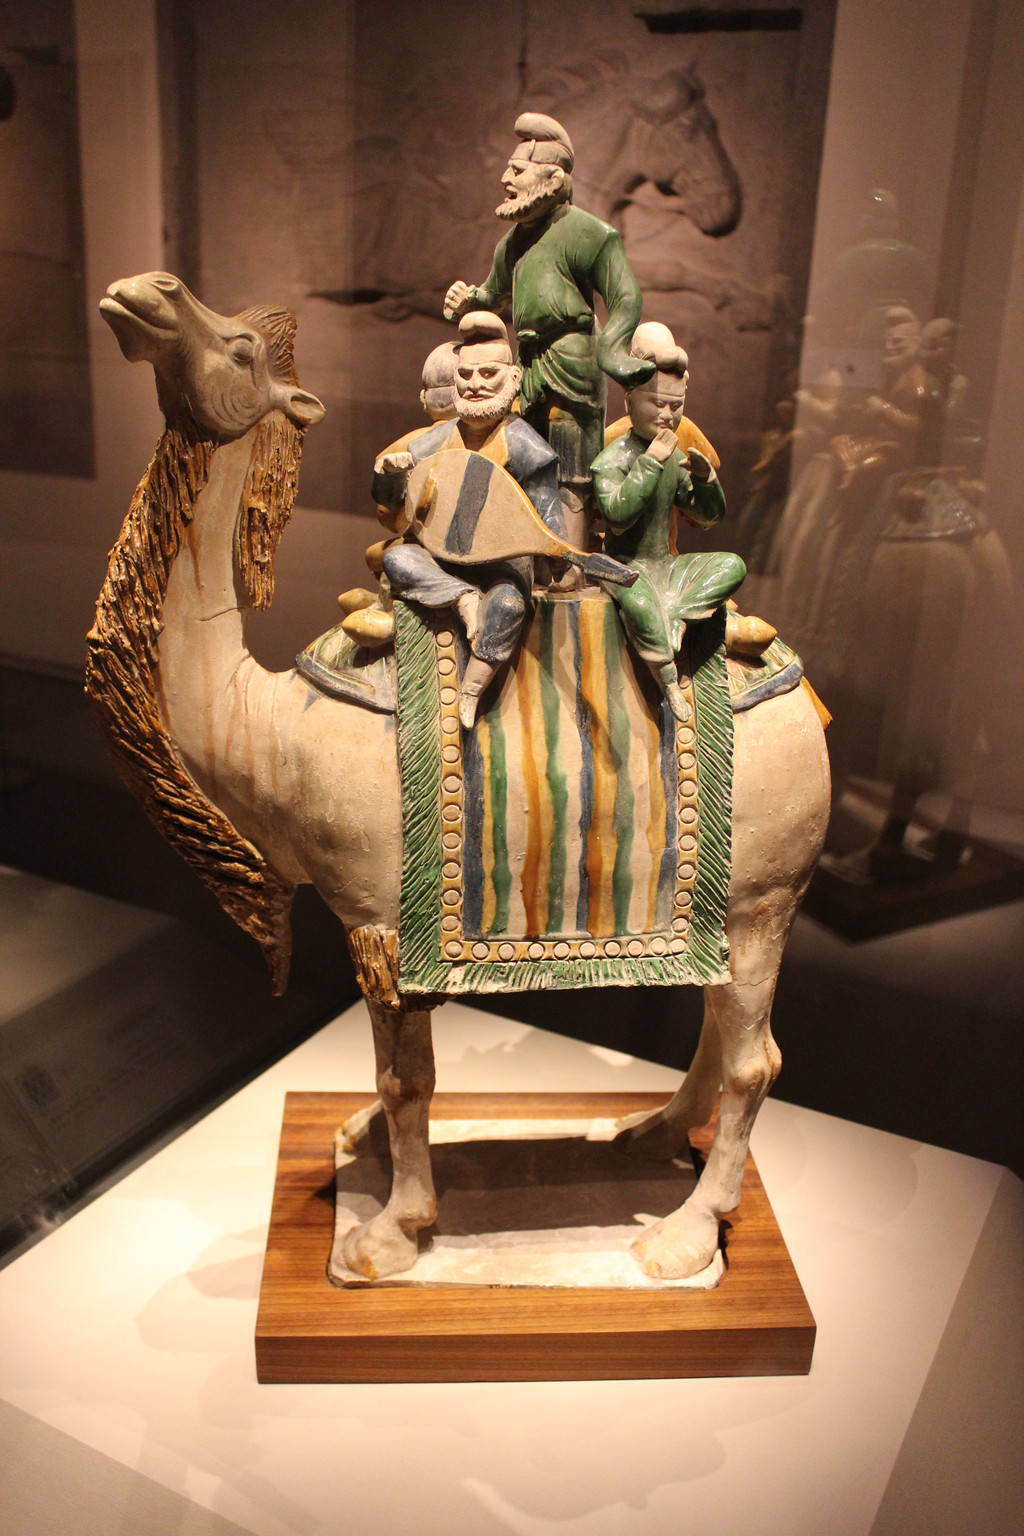 骑驼乐舞三彩俑三彩釉陶骆驼载乐俑,也称为骑驼乐舞三彩俑,唐代明器